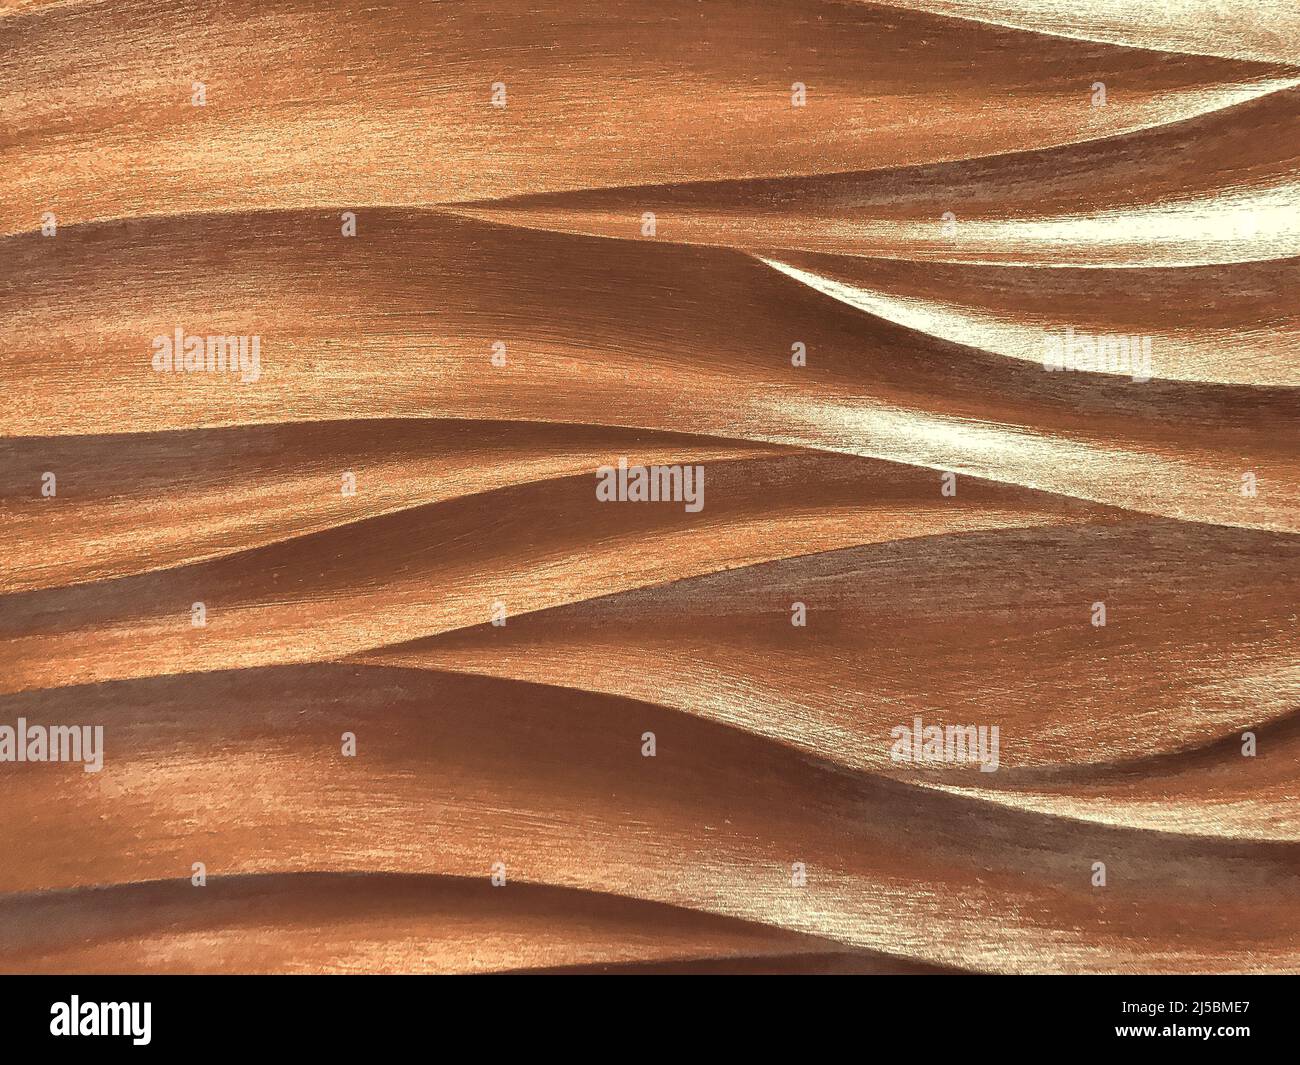 Panel decorativo interior marrón oscuro 3D con diseño ondulado. Textura de fondo de bronce perla. Estructura abstracta arte onda fondo, macro. Foto de stock